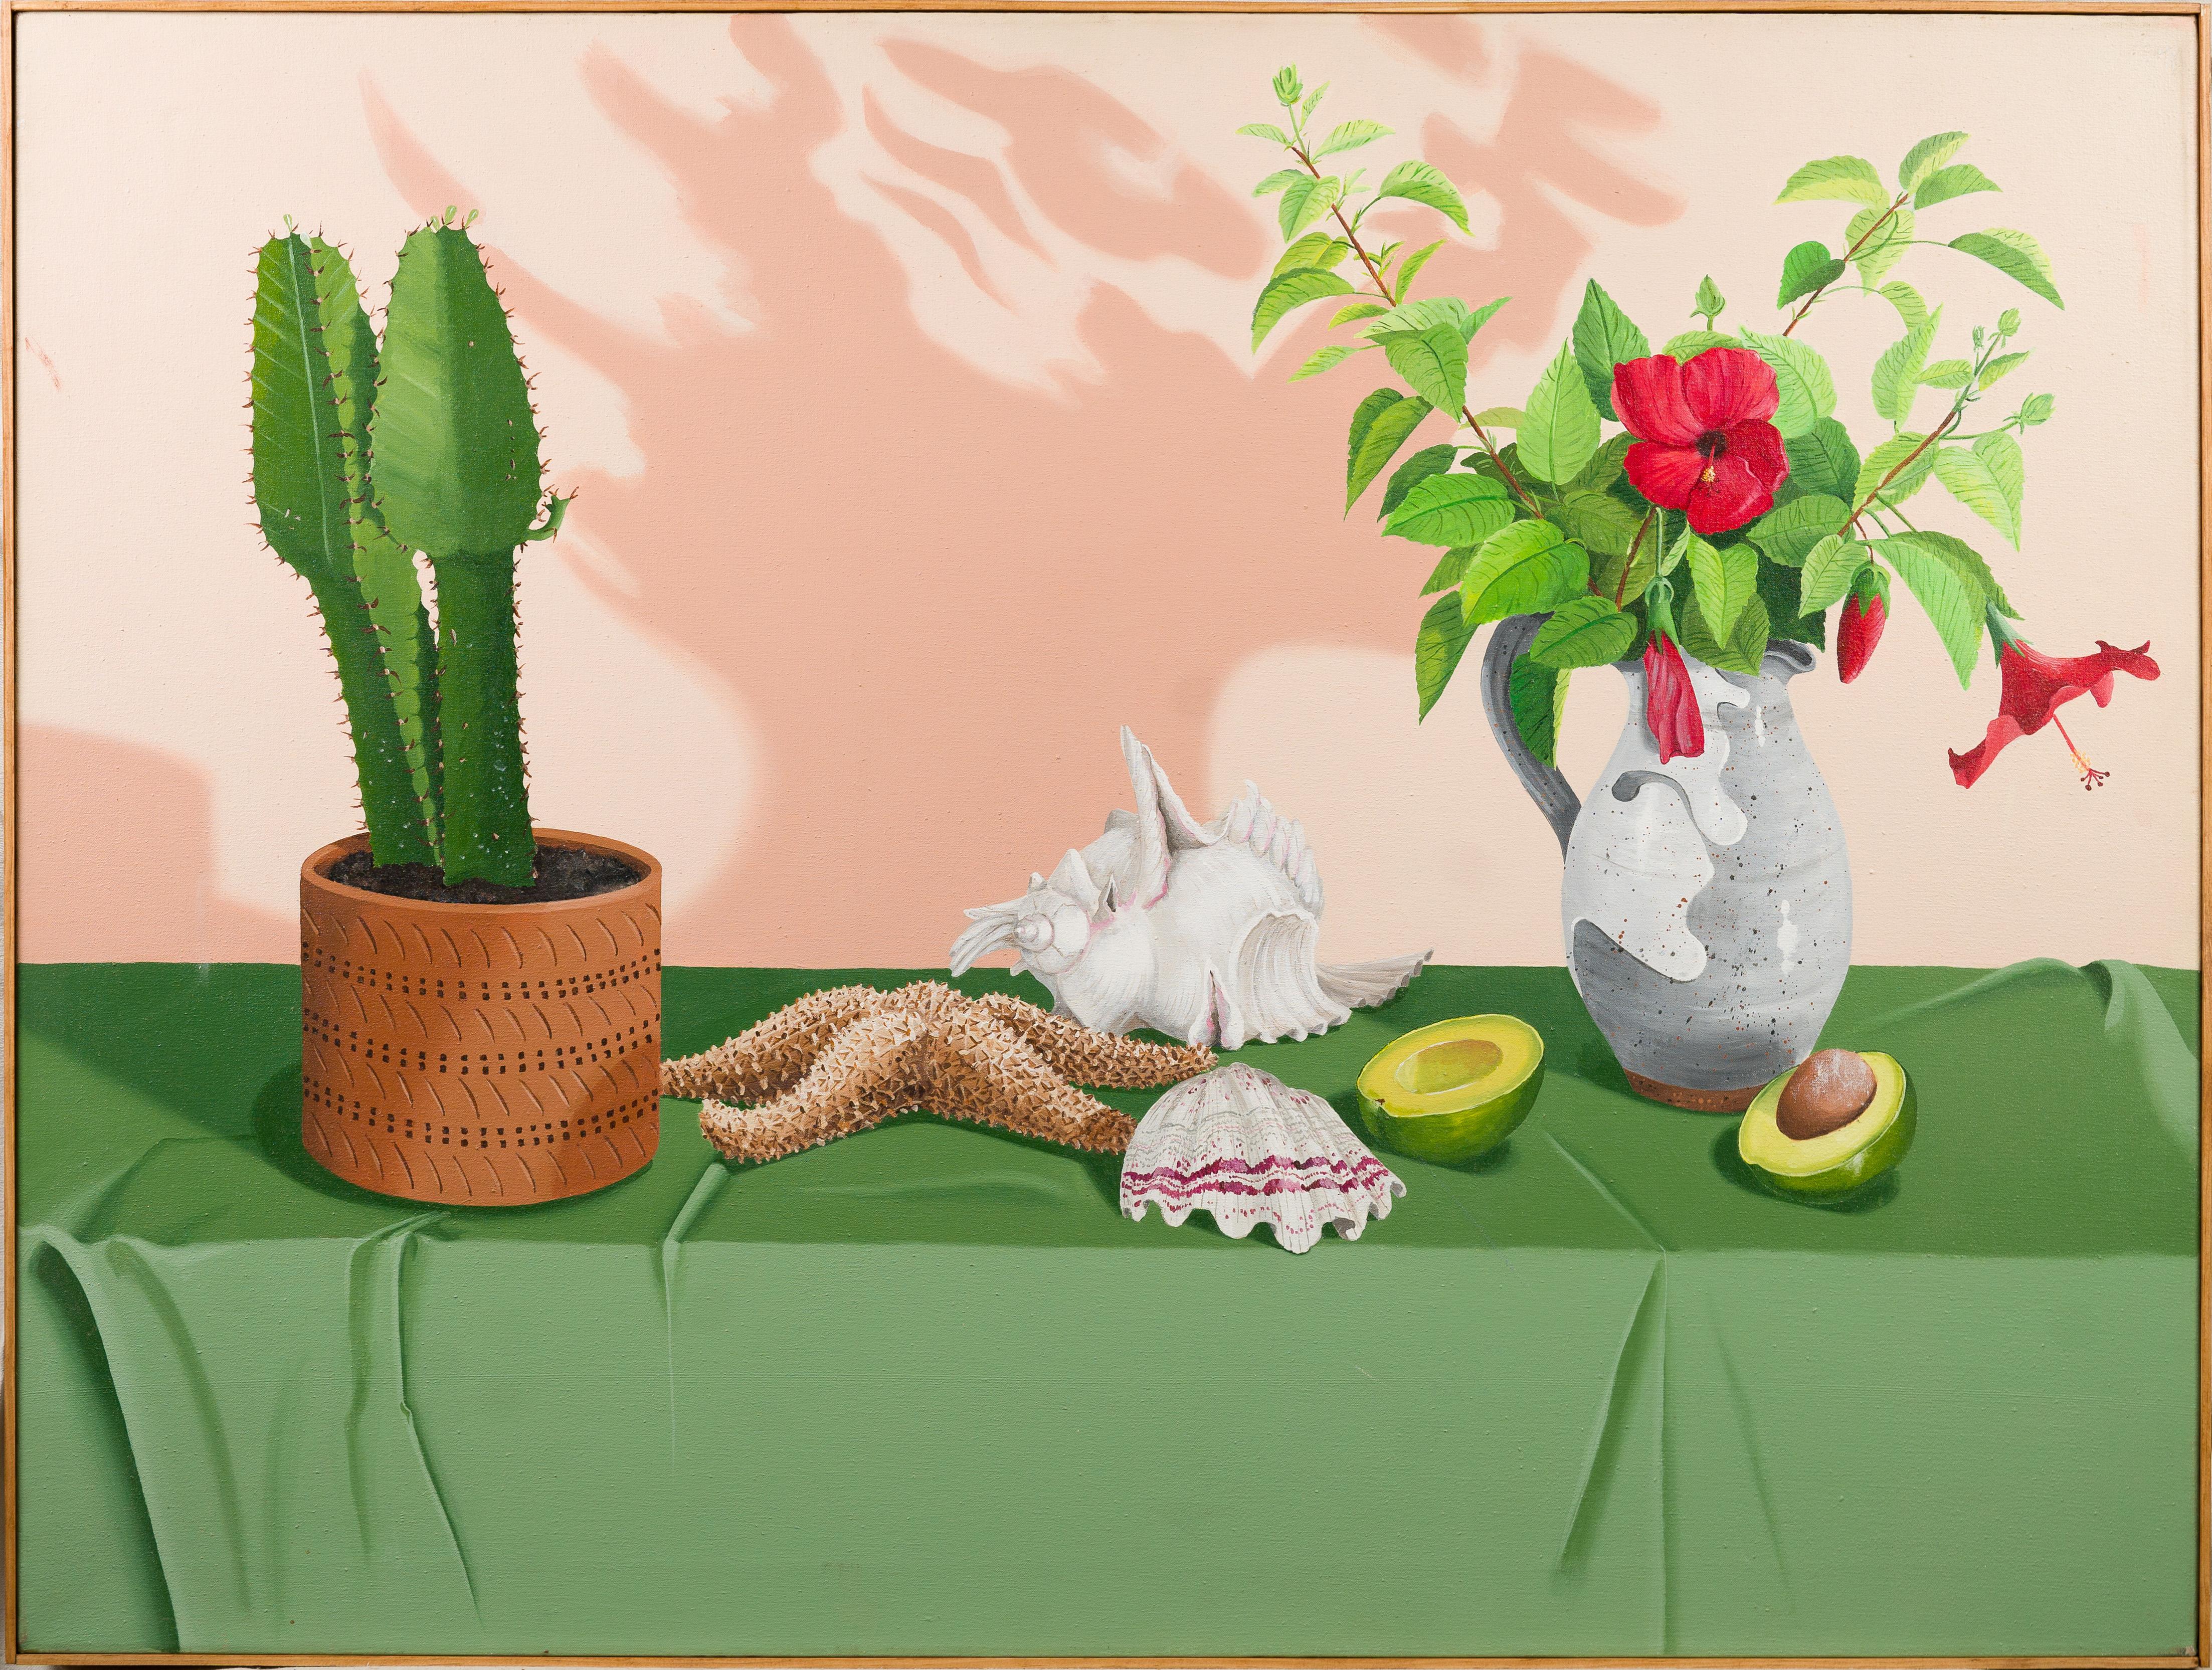 Vintage American Modernist Super Realist Trompe L'Oeil Kaktus Avacado Stillleben – Painting von Unknown